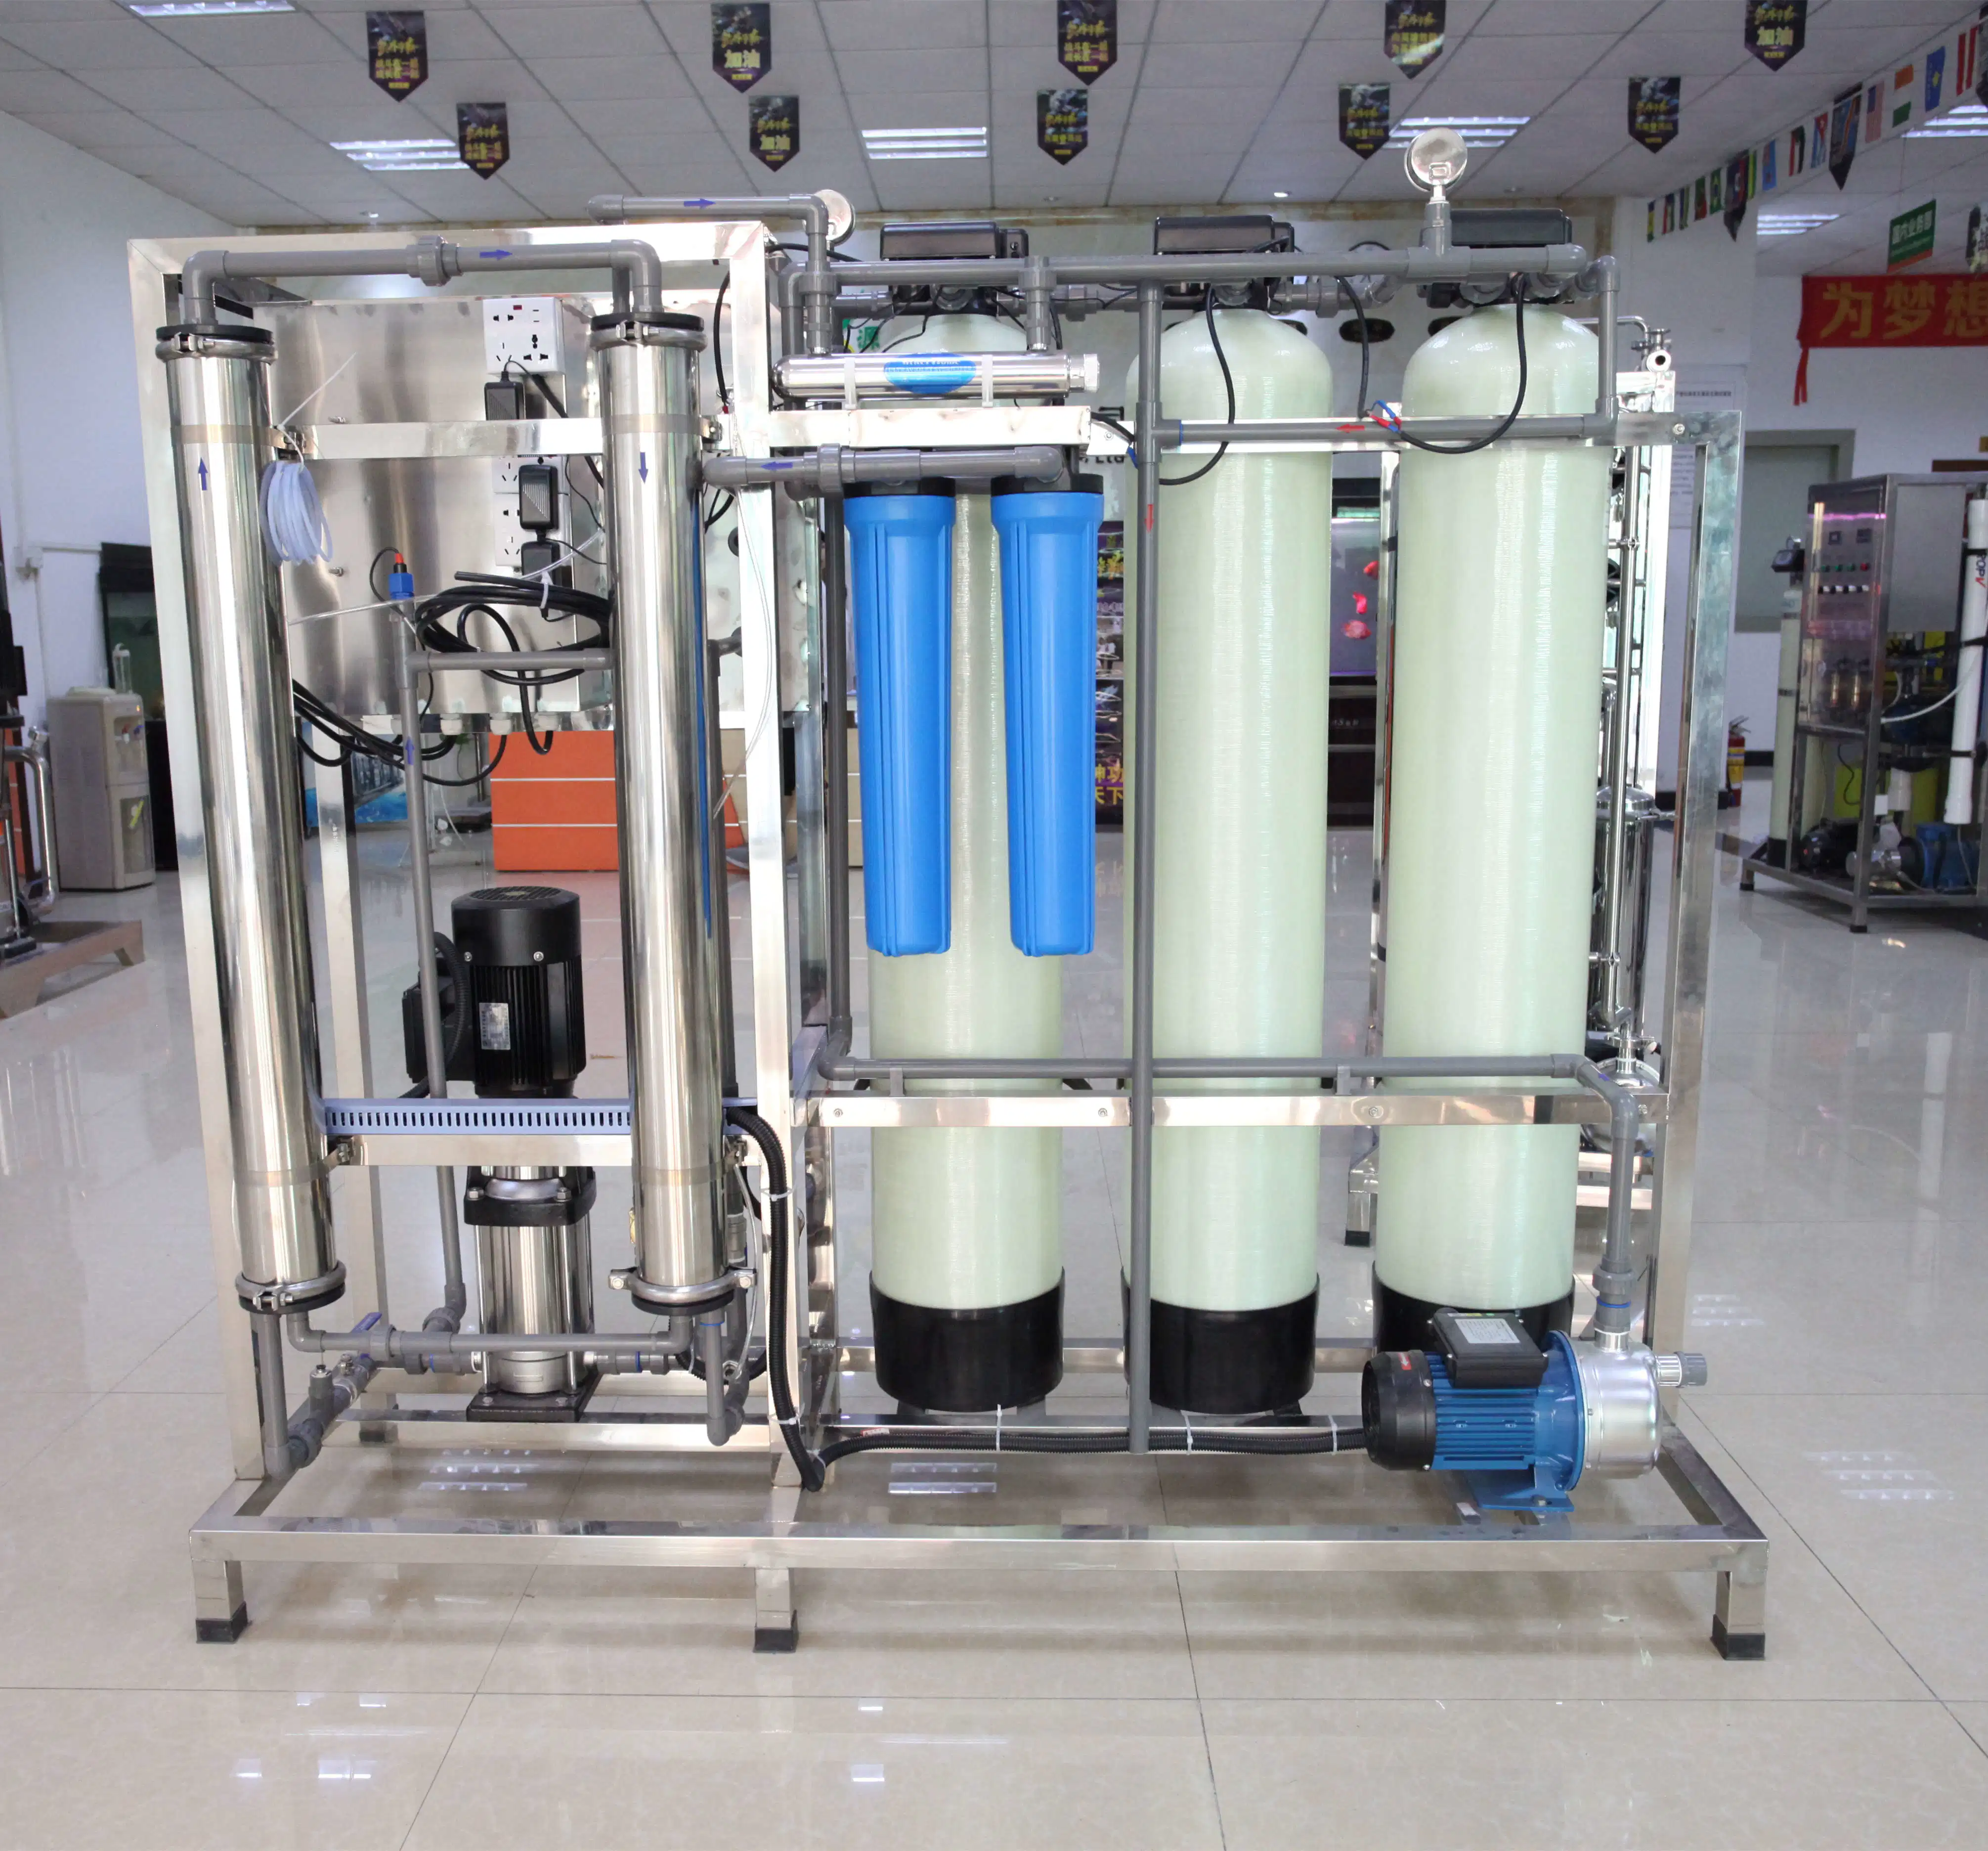 500 lph Tratamiento de Aguas, purificador de agua de la máquina, Sistema de filtro de agua para beber agua